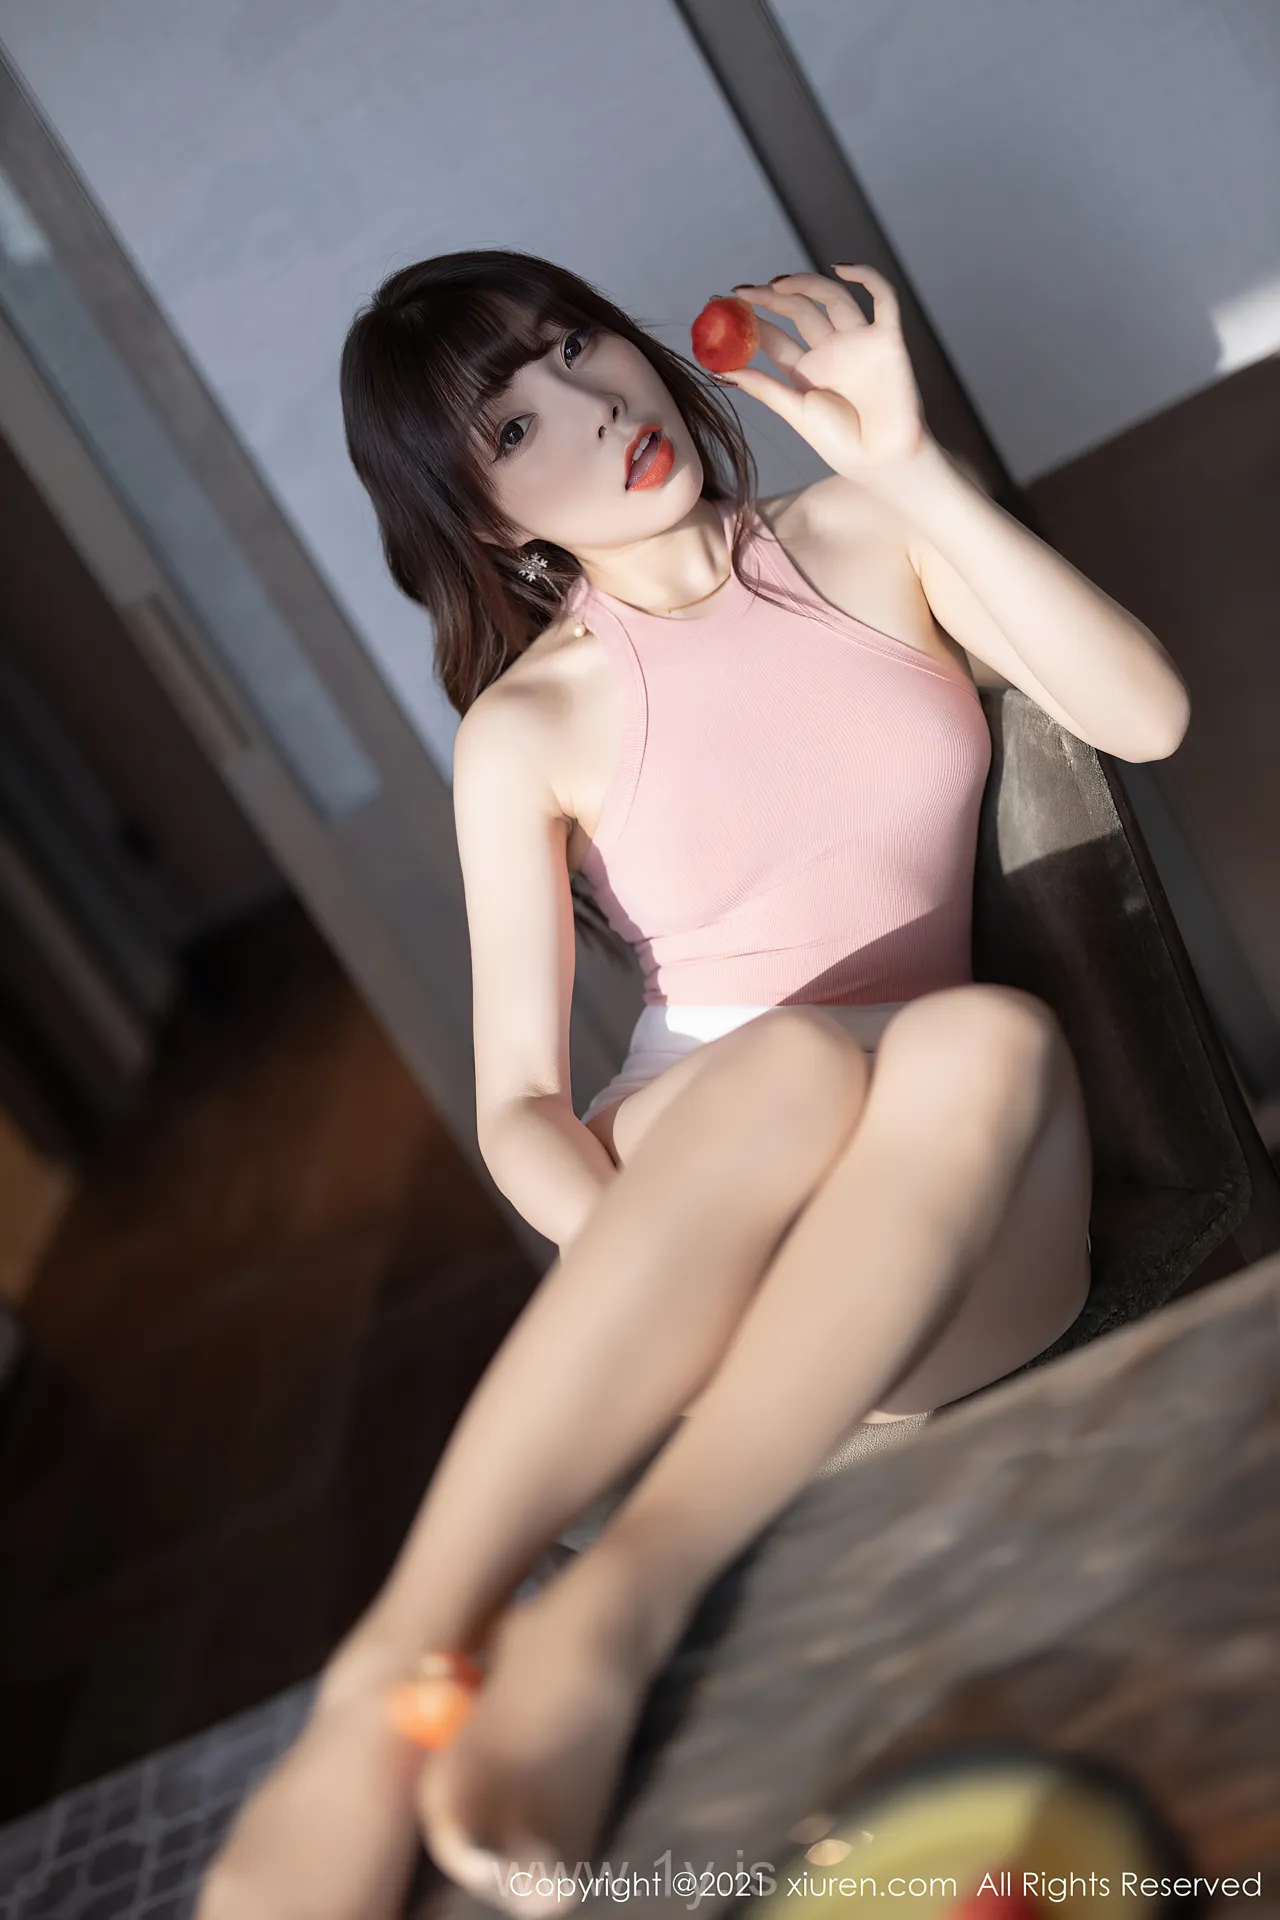 XIUREN(秀人网) NO.3245 Attractive Asian Hottie 芝芝Booty